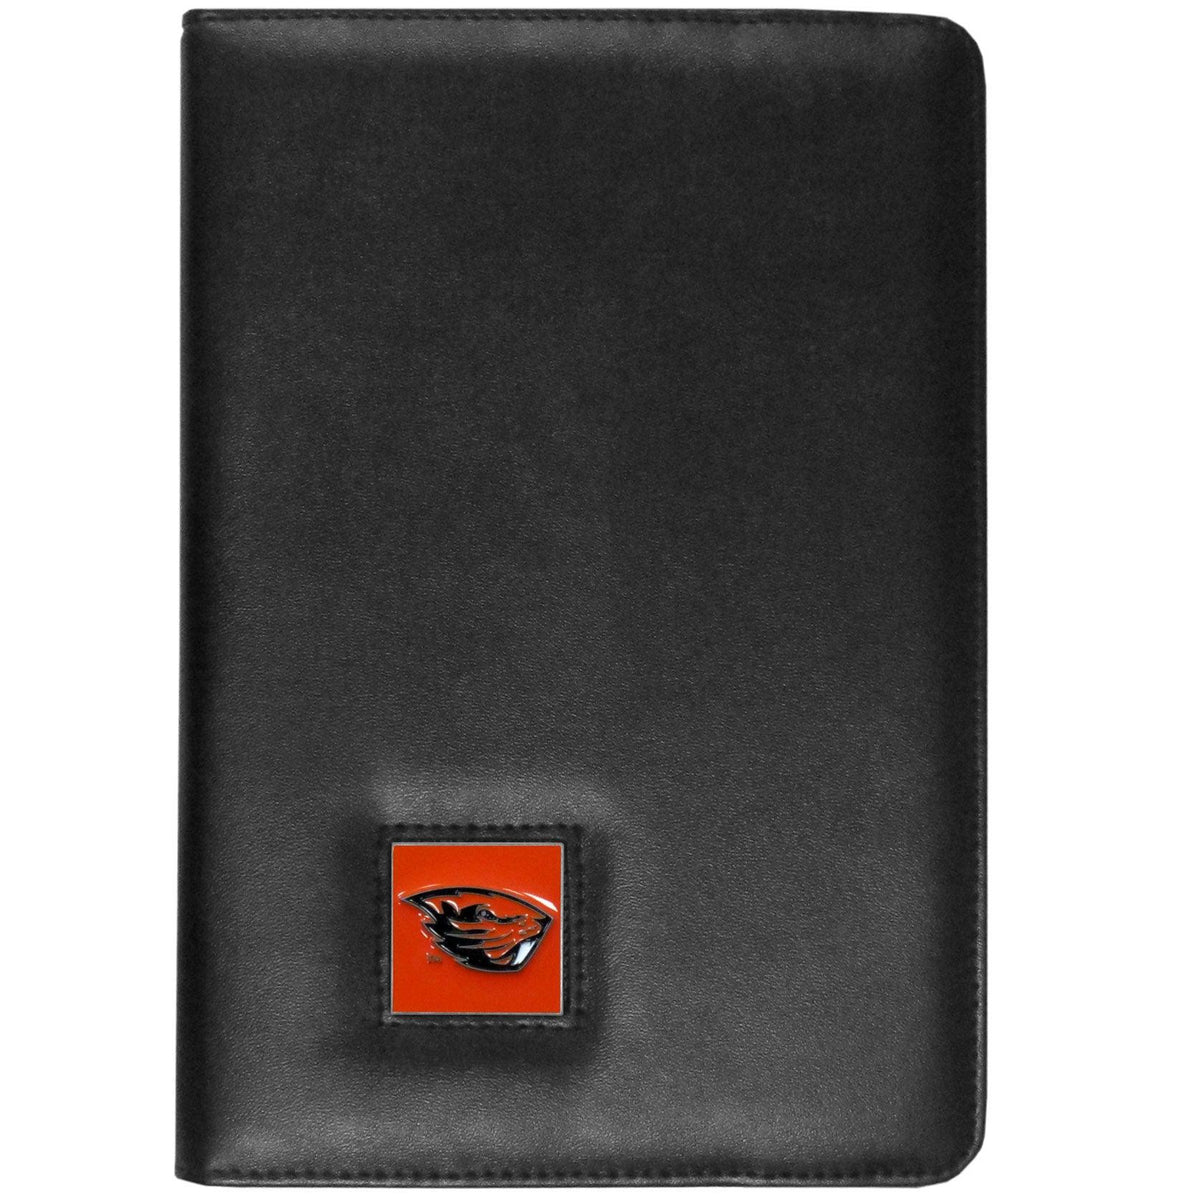 Oregon St. Beavers iPad Folio Case - Flyclothing LLC